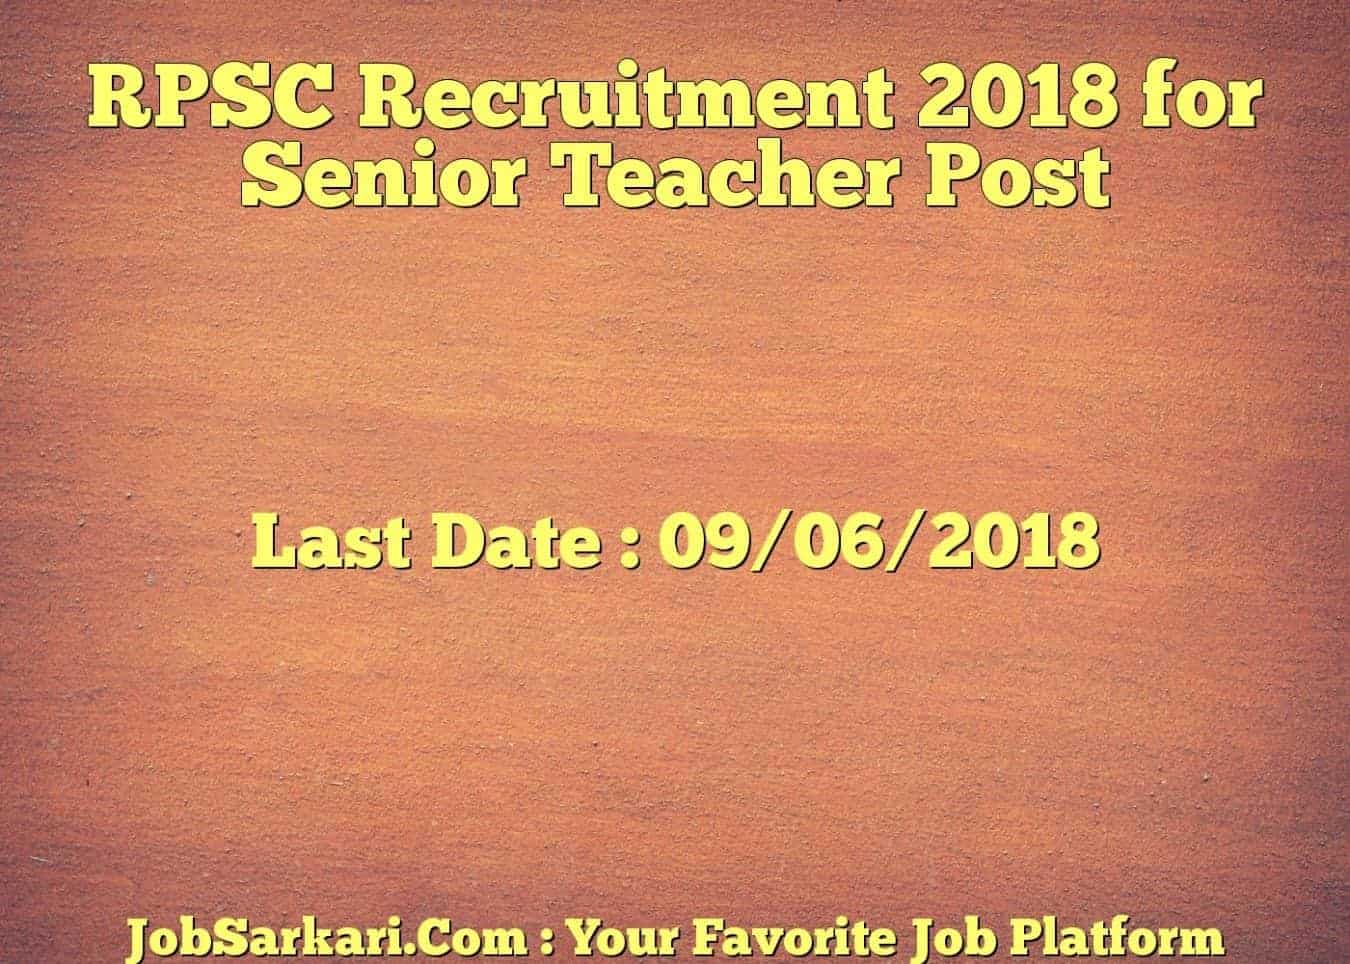 RPSC Recruitment 2018 for Senior Teacher Post